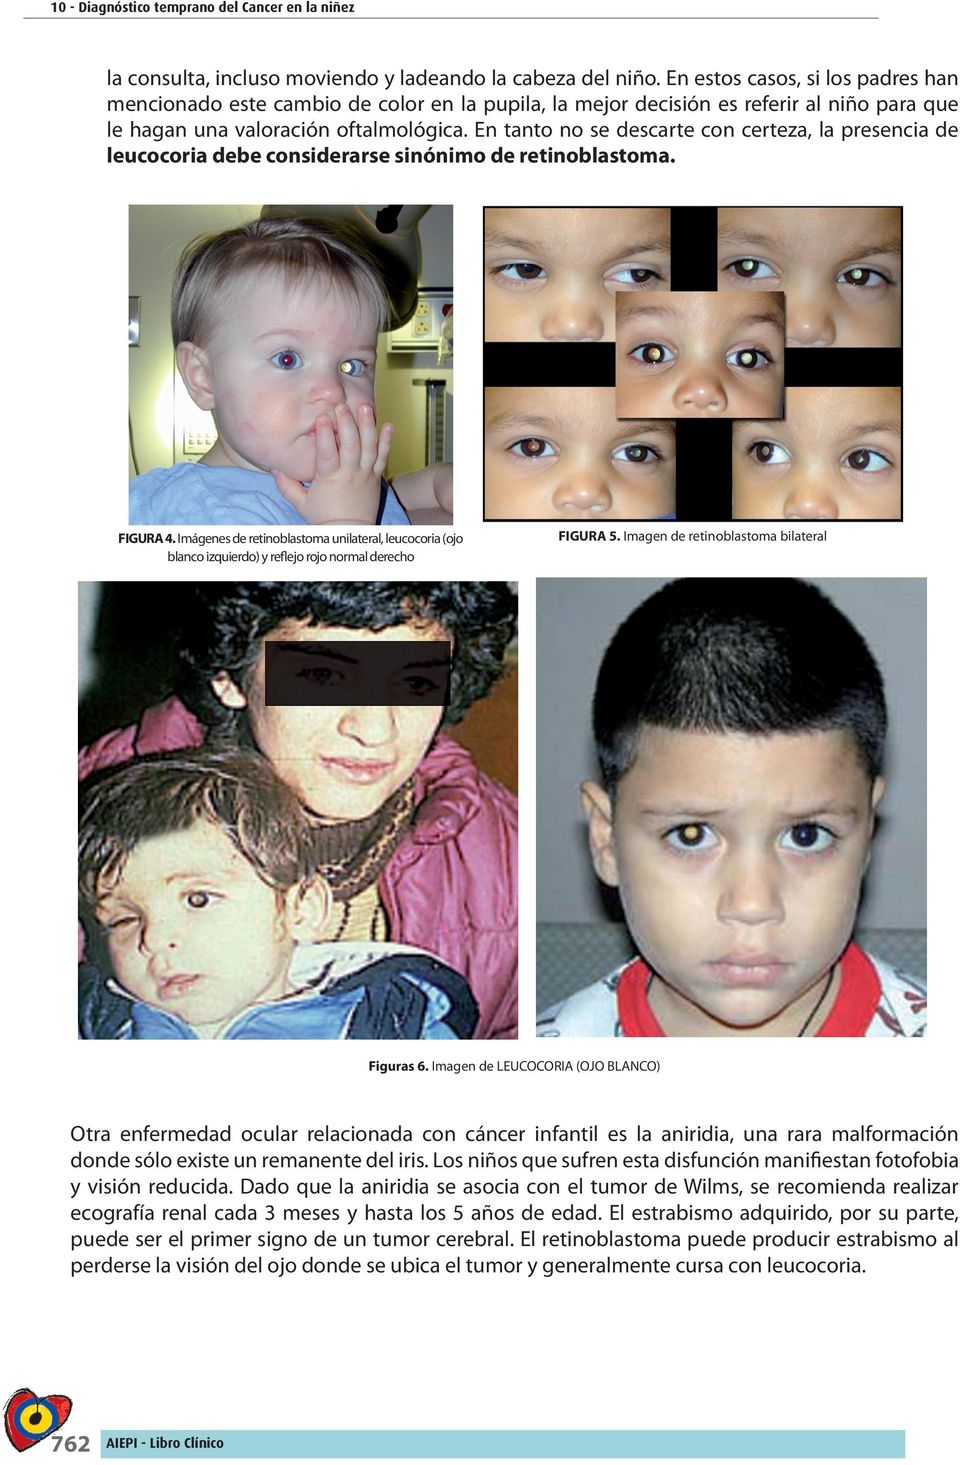 En tanto no se descarte con certeza, la presencia de leucocoria debe considerarse sinónimo de retinoblastoma. FIGURA 4.